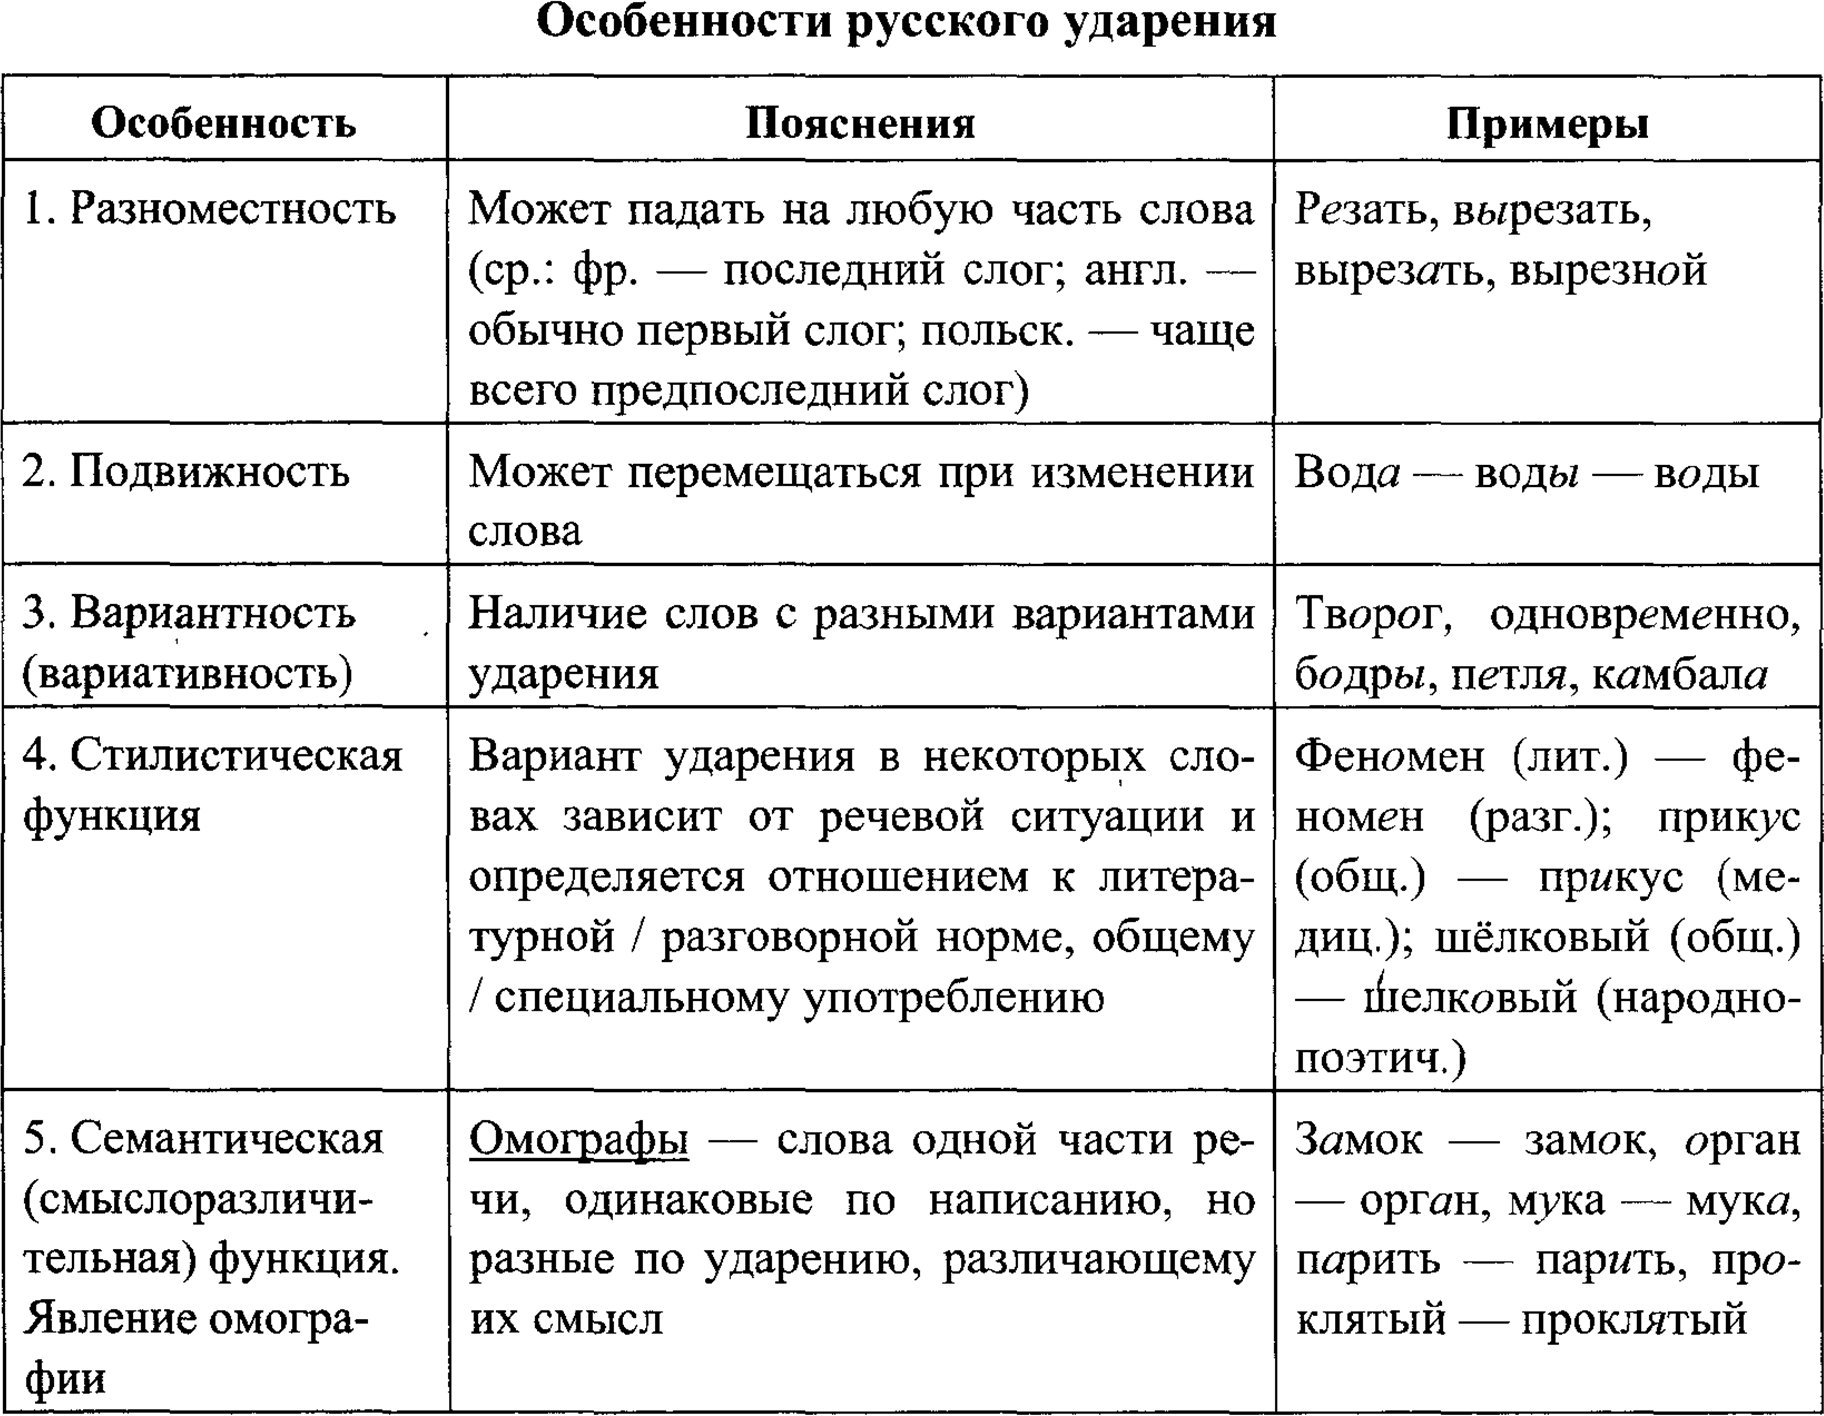 Особенности русского ударения